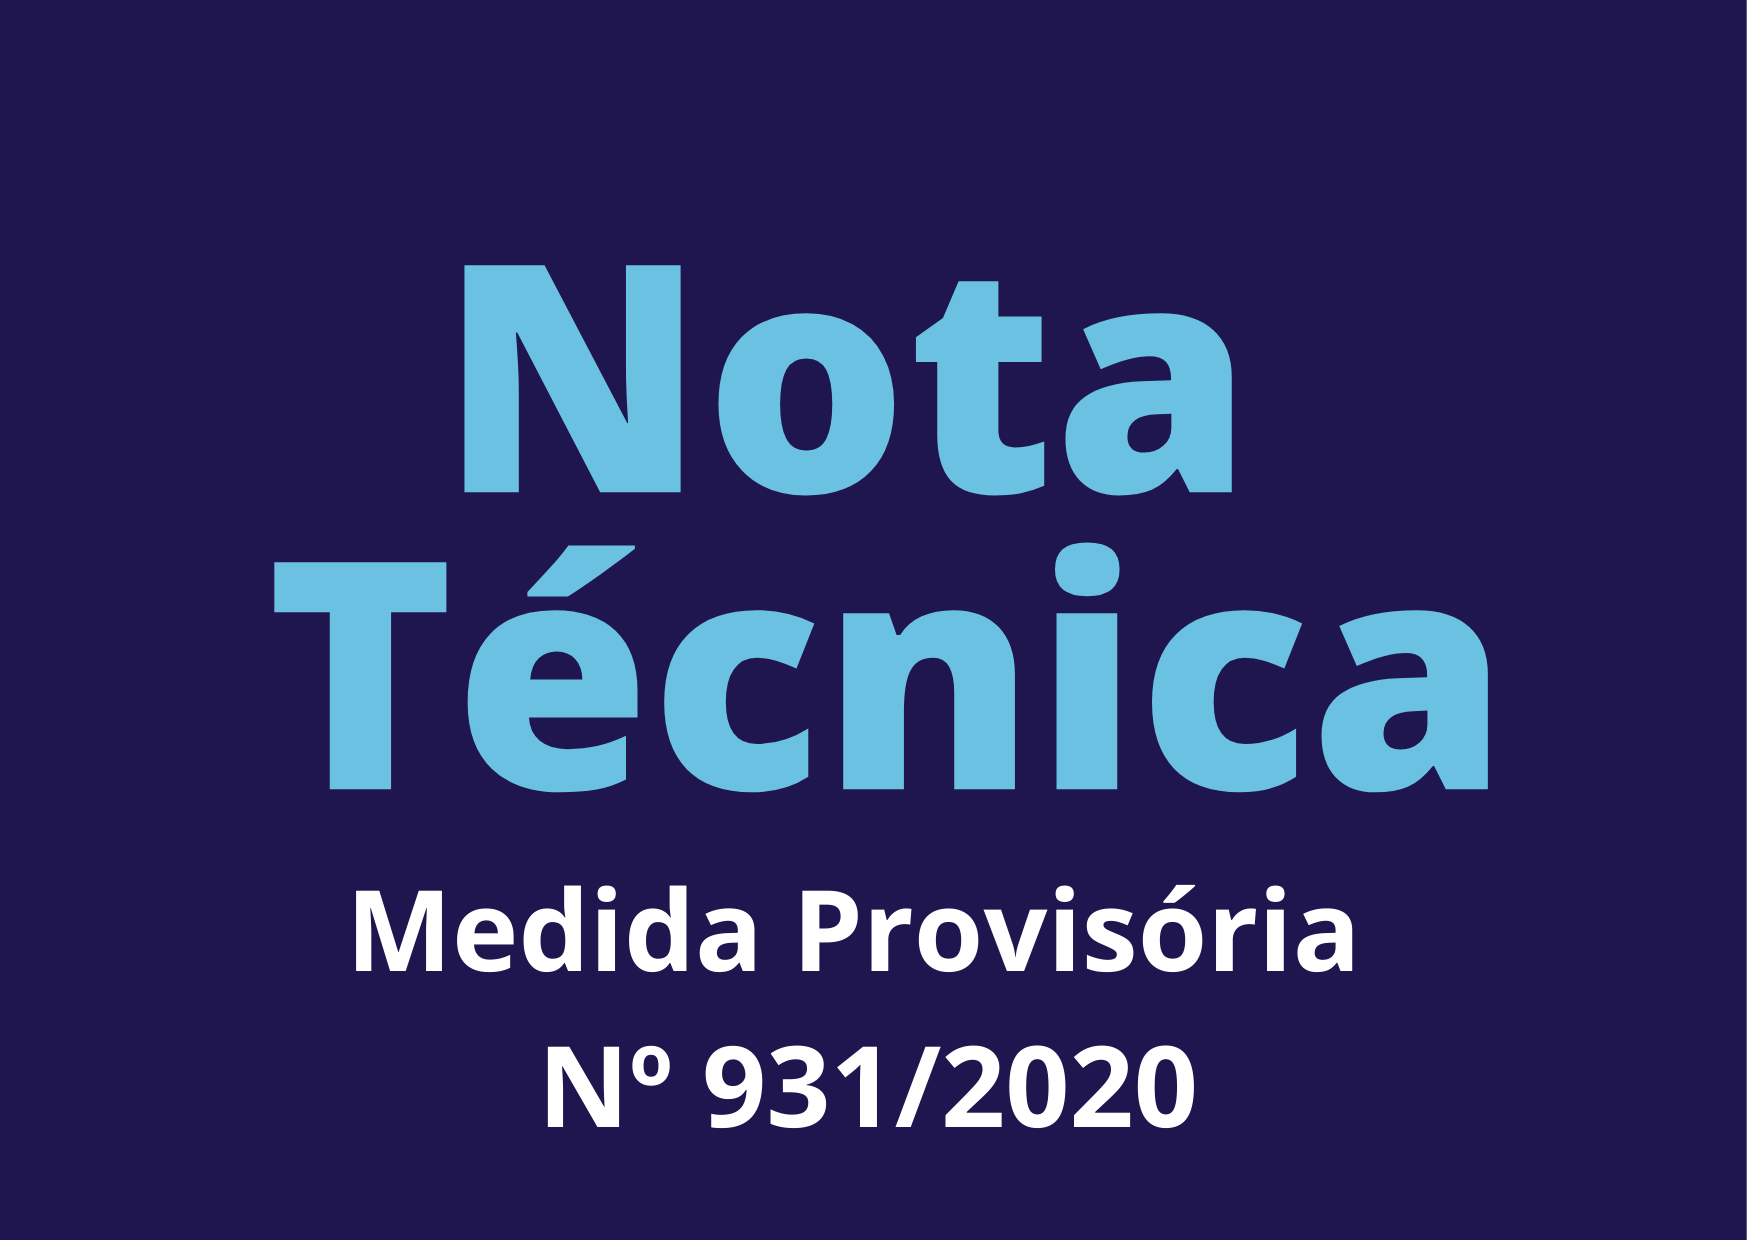 Nota Técnica sobre Medida Provisória nº 931/2020